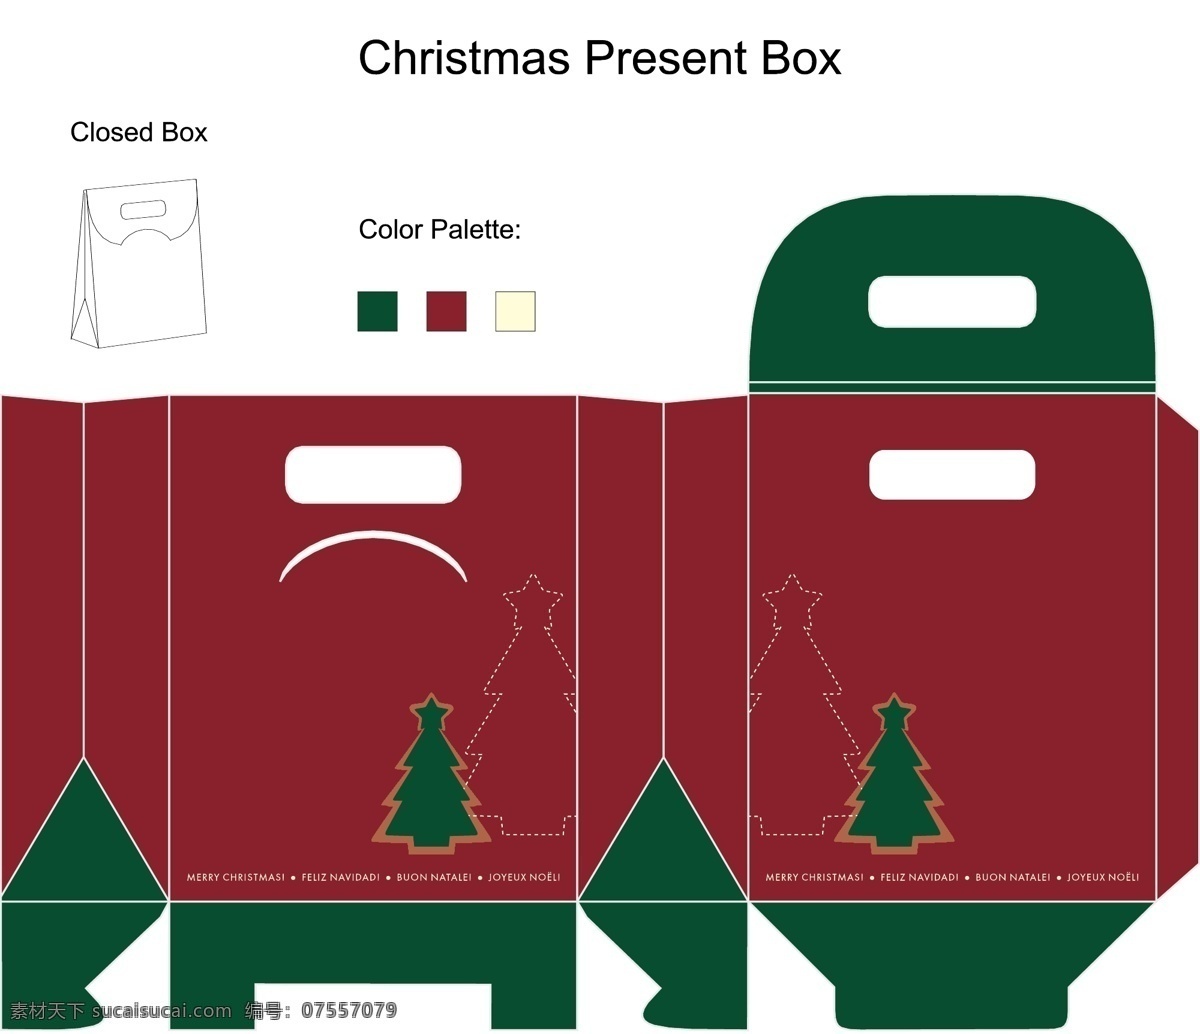 包装盒设计 包装盒模板 药品 礼品 礼盒 纸盒包装 包装设计 包装盒 矢量